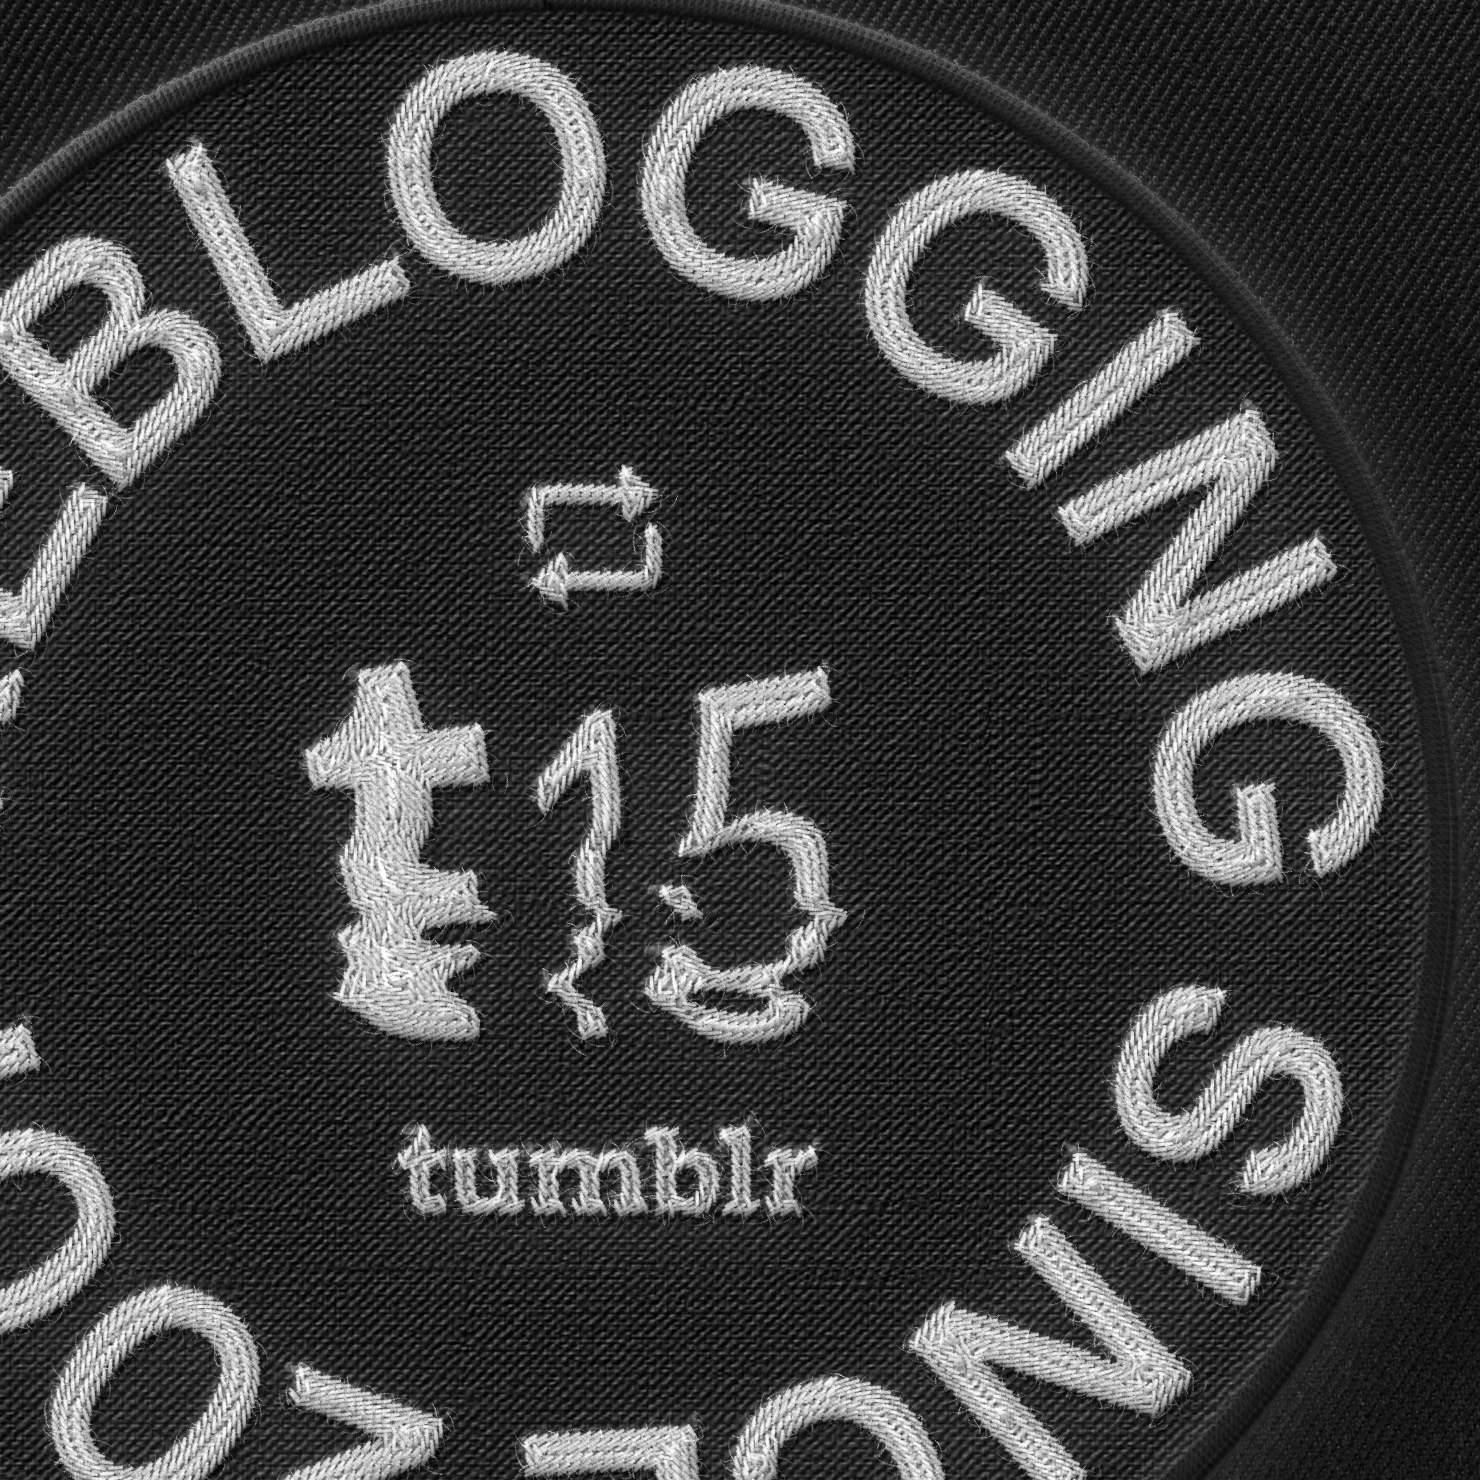 reblogging-since-2007-patch-tumblr-shop